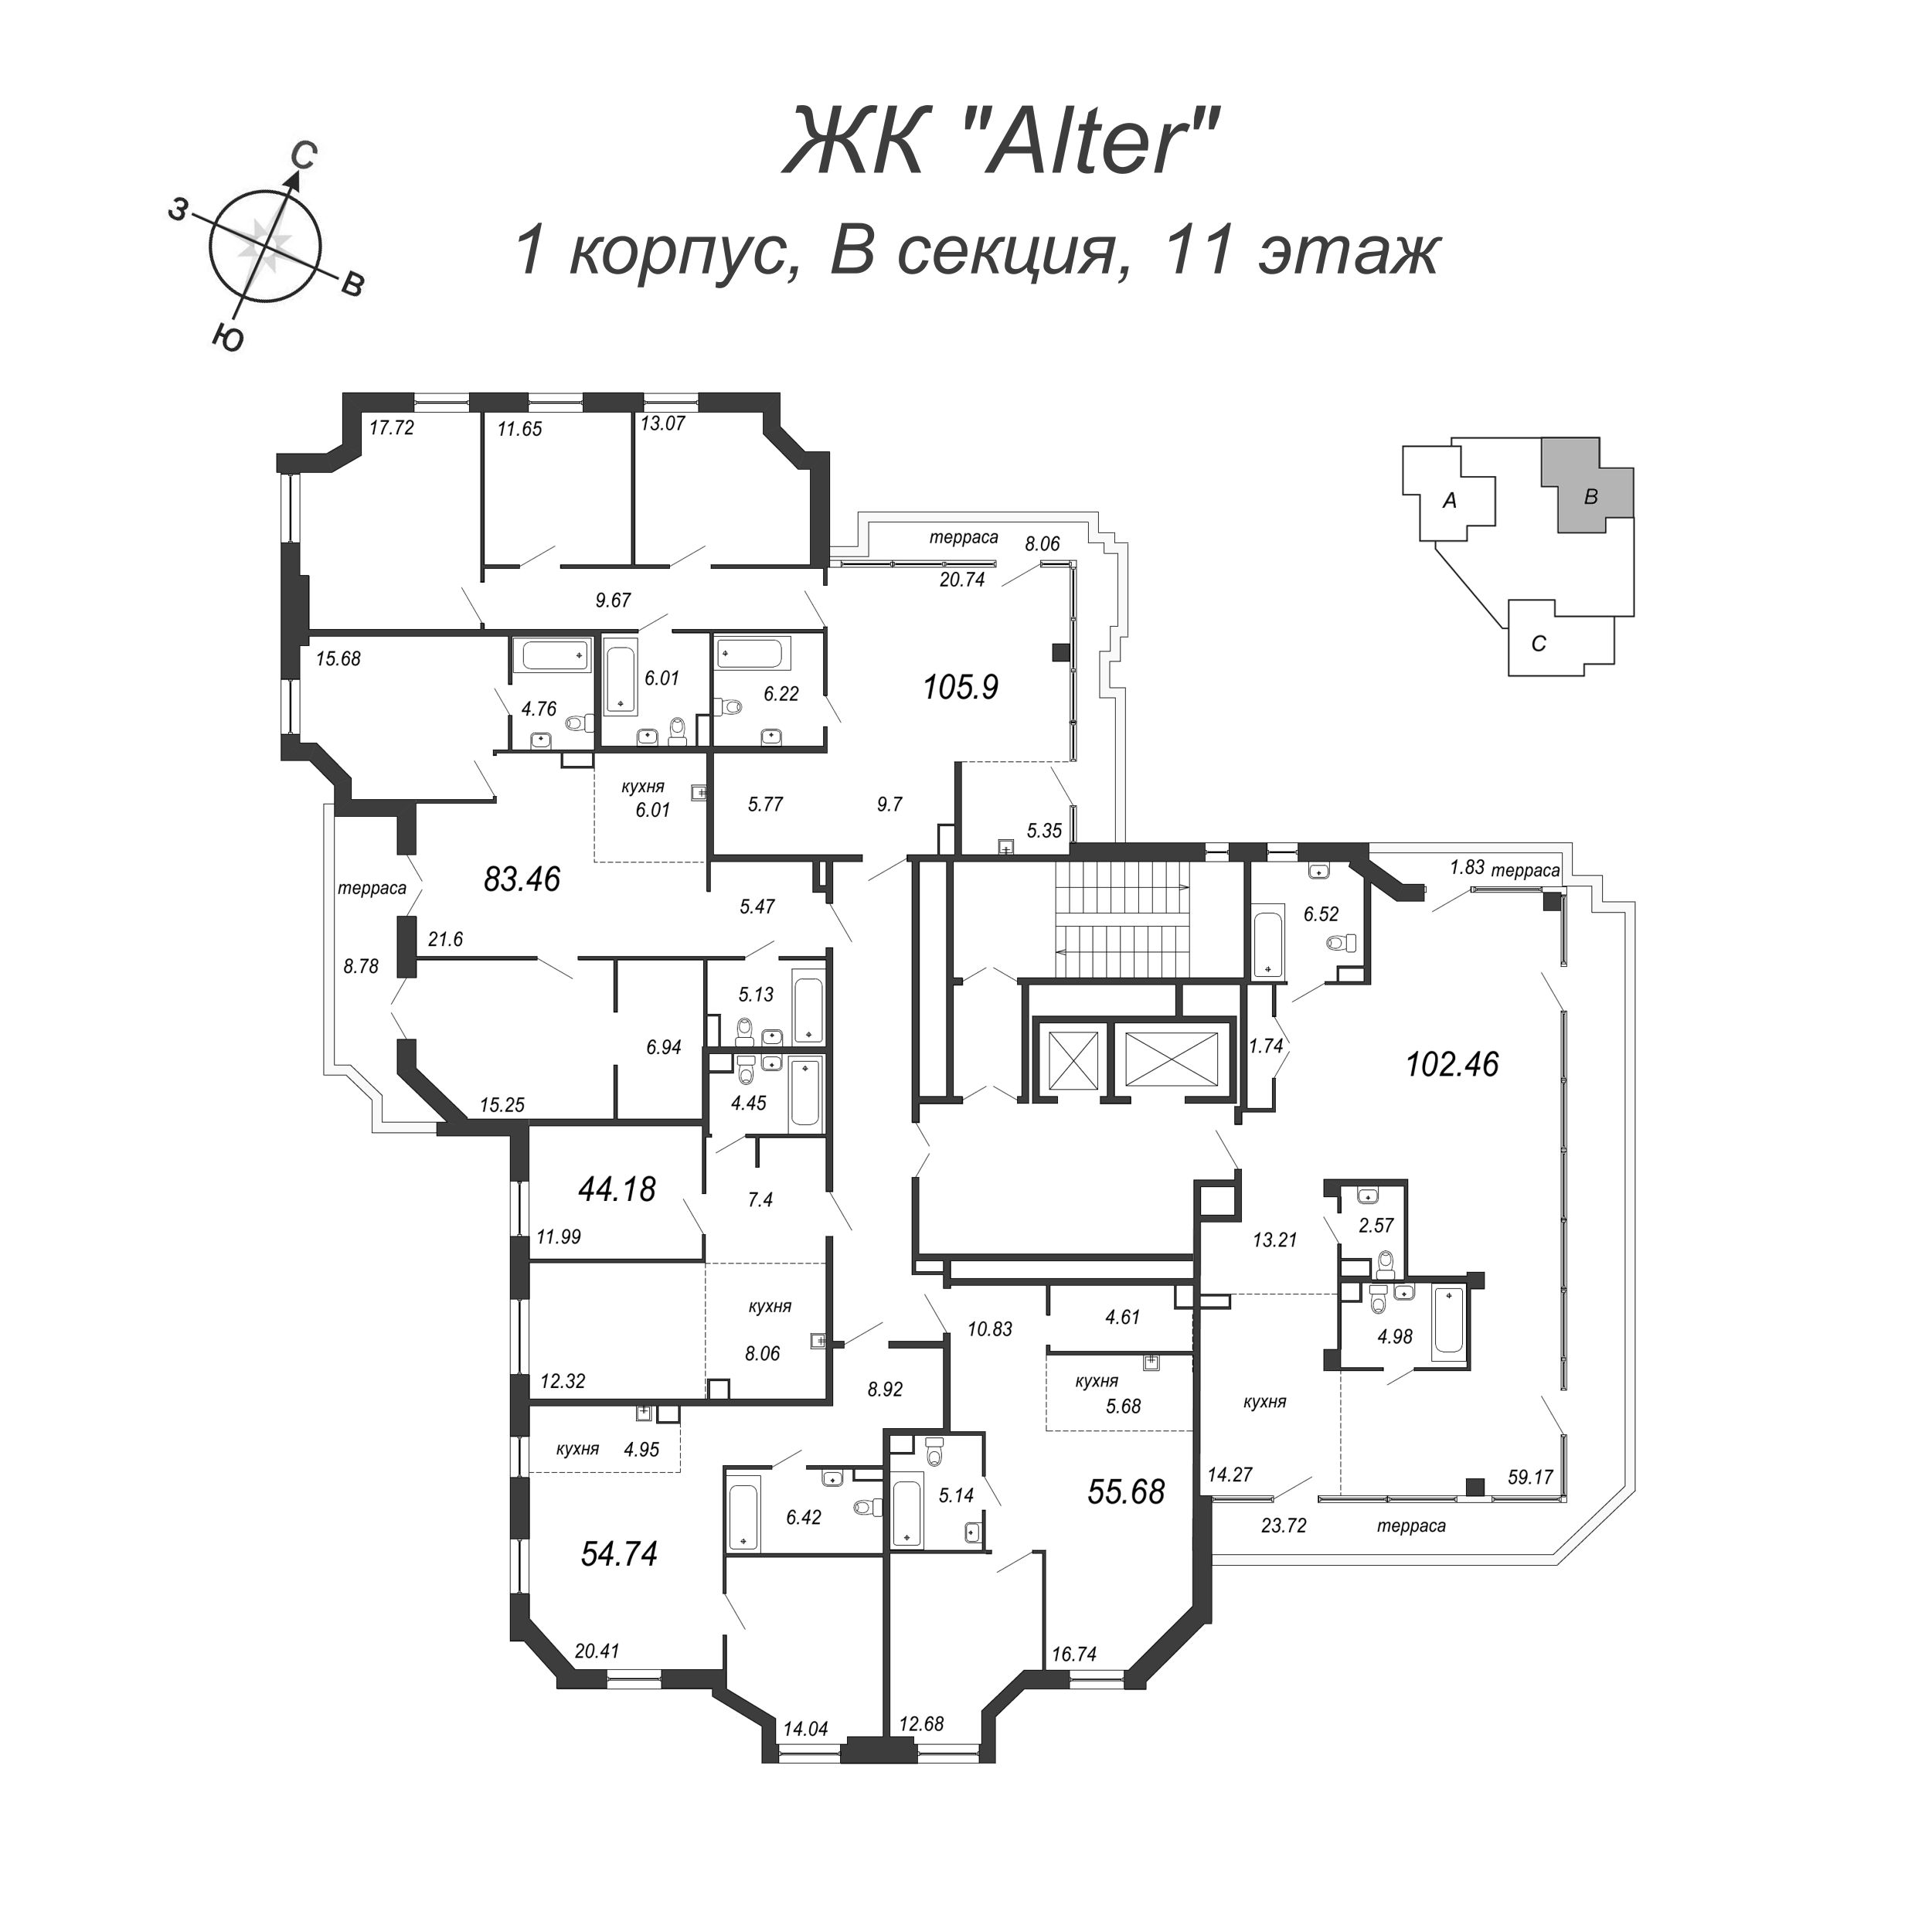 2-комнатная (Евро) квартира, 107.1 м² в ЖК "Alter" - планировка этажа